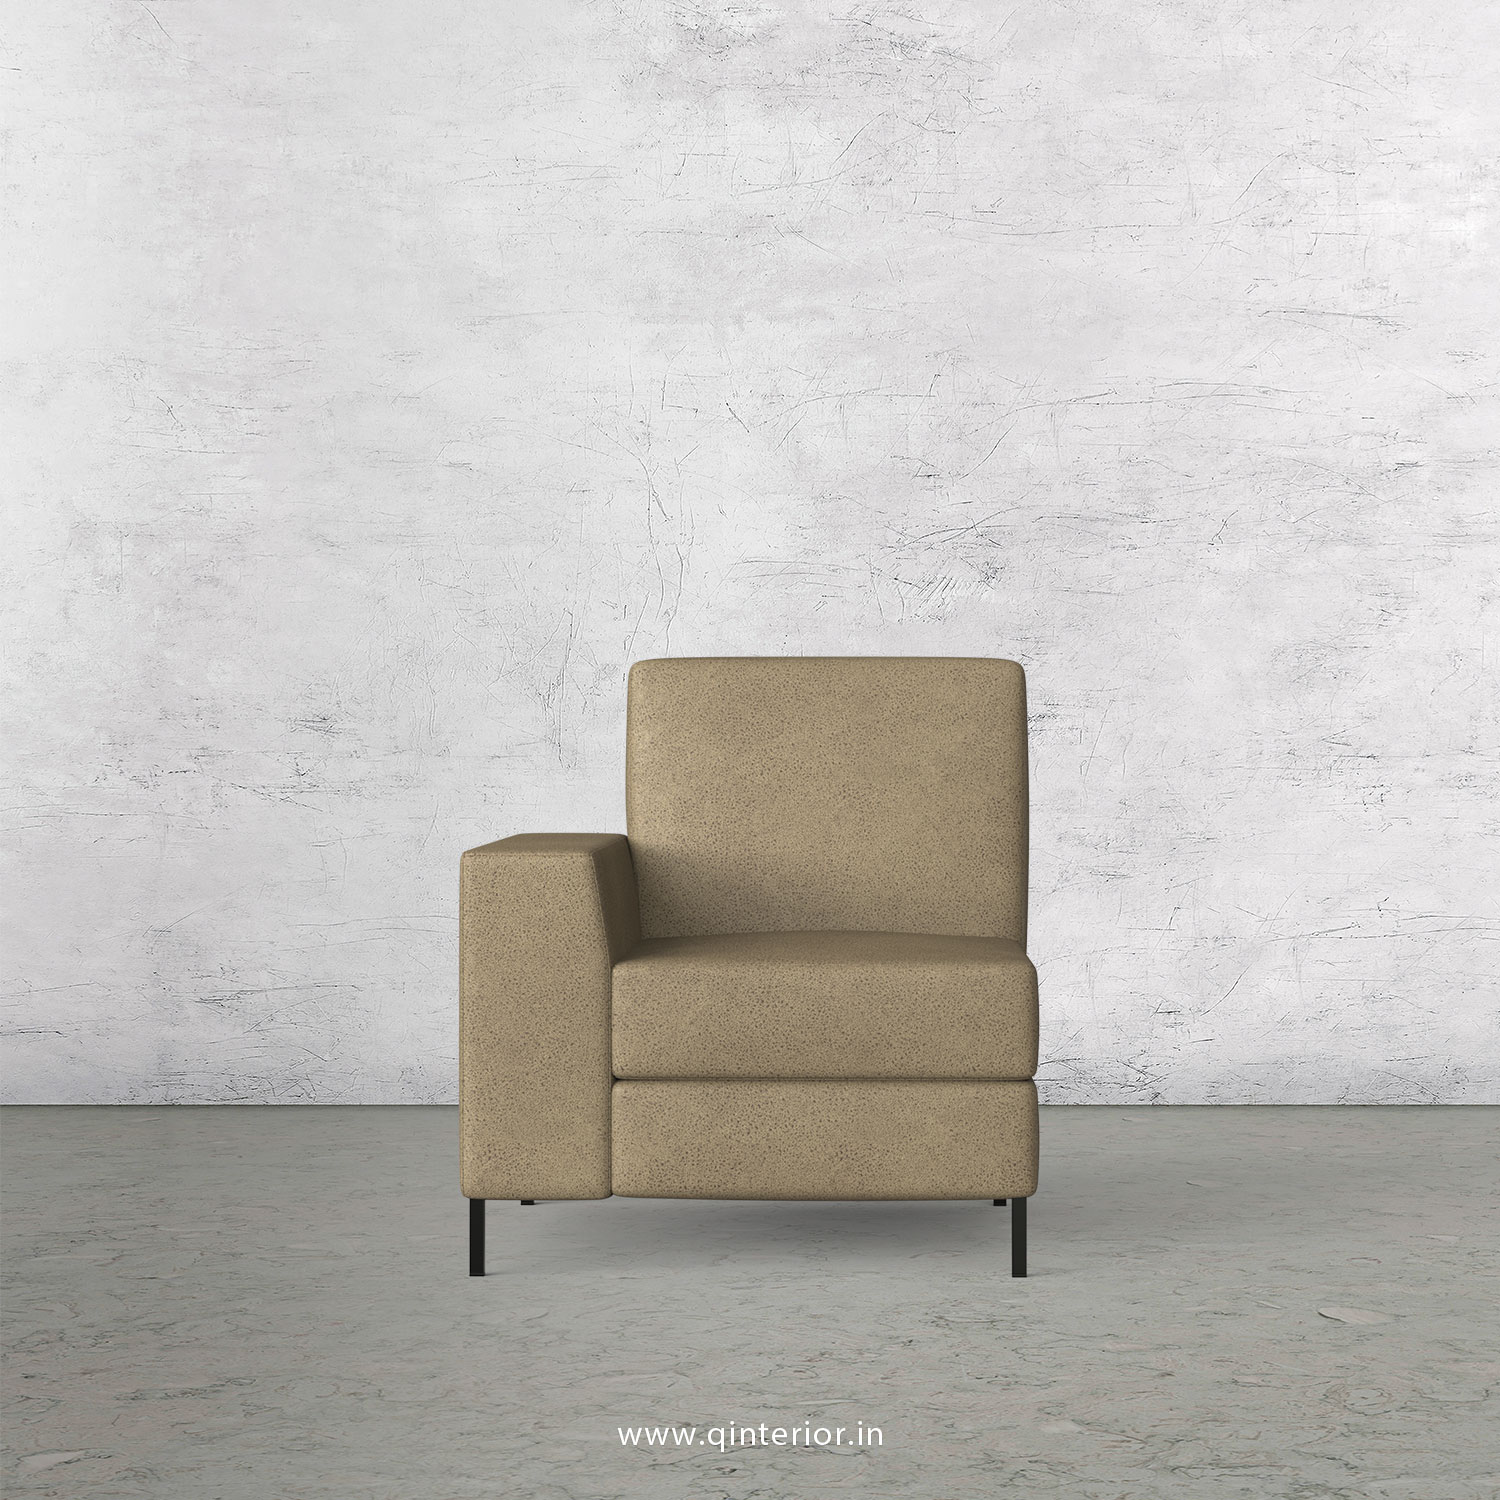 Viva 1 Seater Modular Sofa in Fab Leather Fabric - MSFA001 FL06